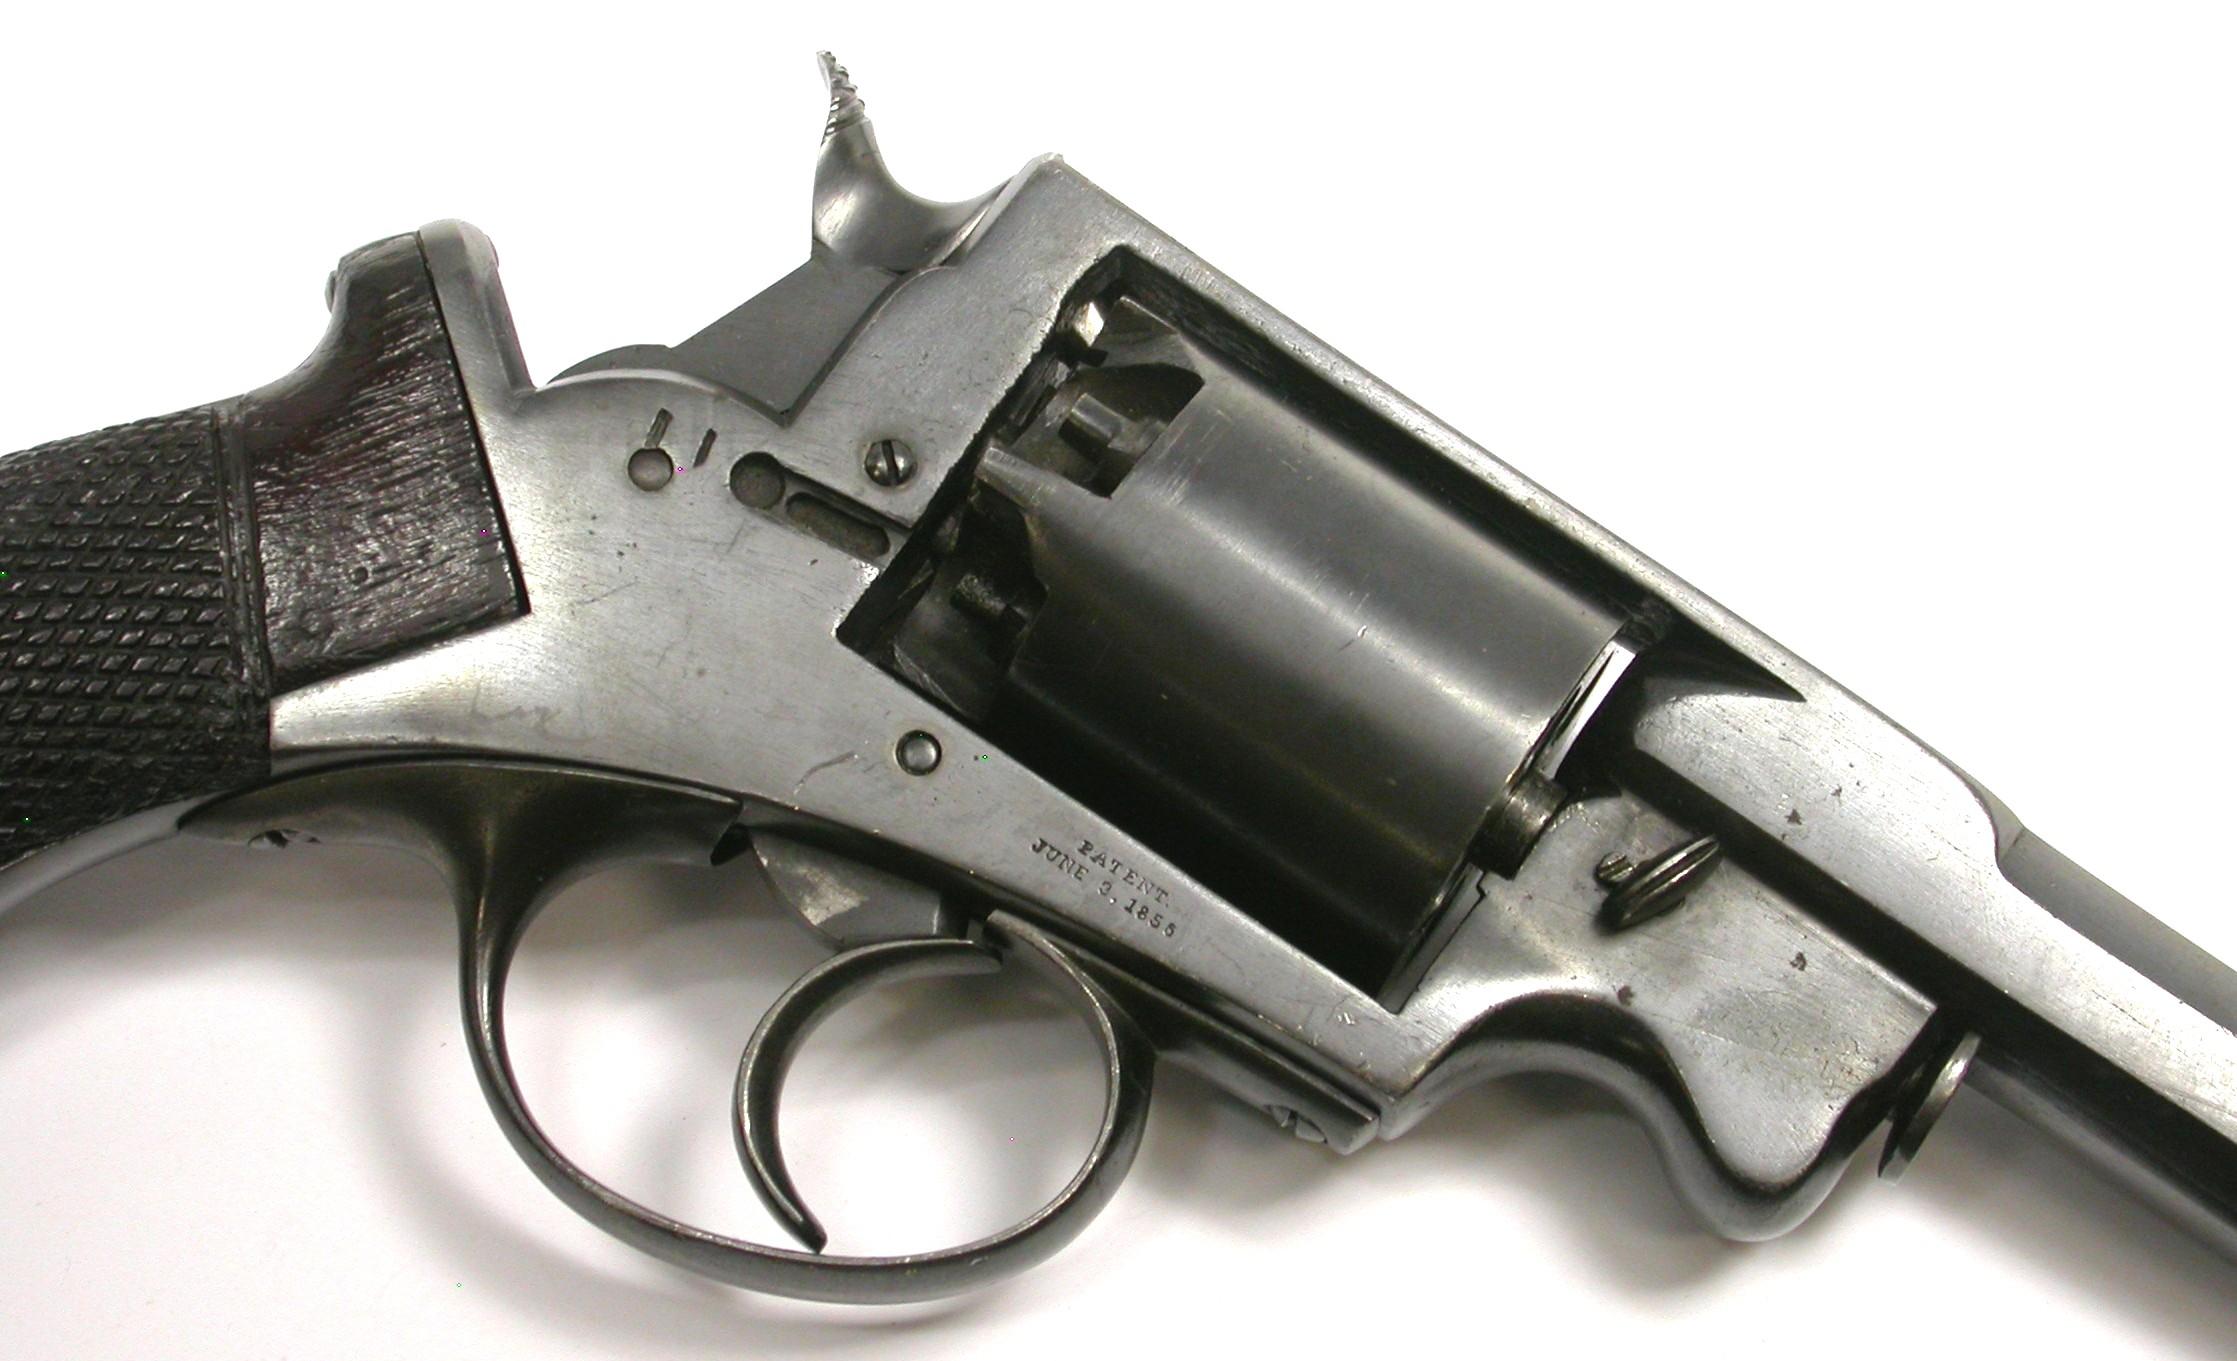 Massachusetts Arms Co. Adams Patent .36 Caliber Percussion Revolver - Antique - no FFL needed (XJE1)